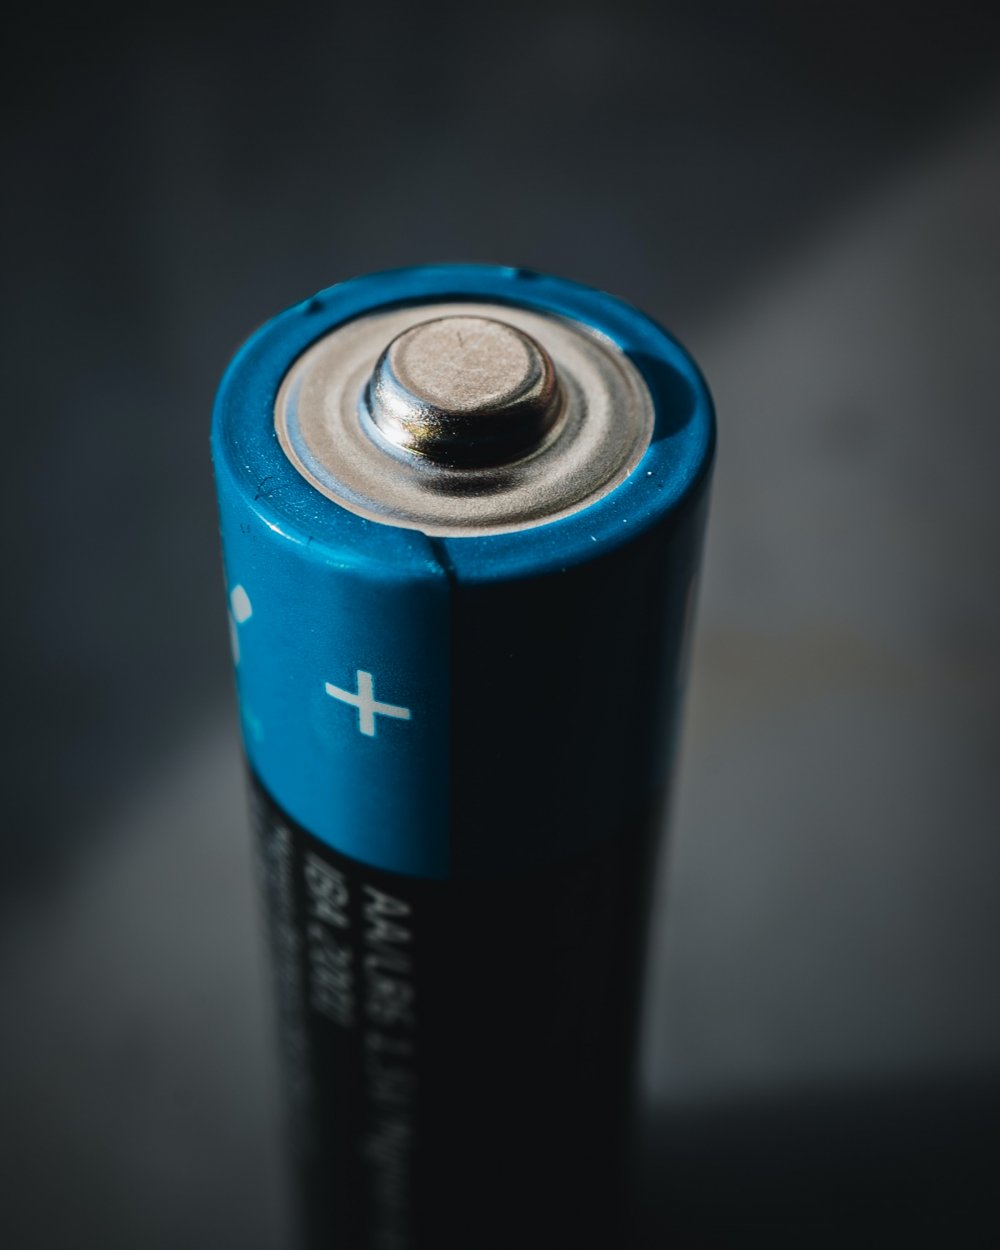 Kjøp batteri online og få bedre priser